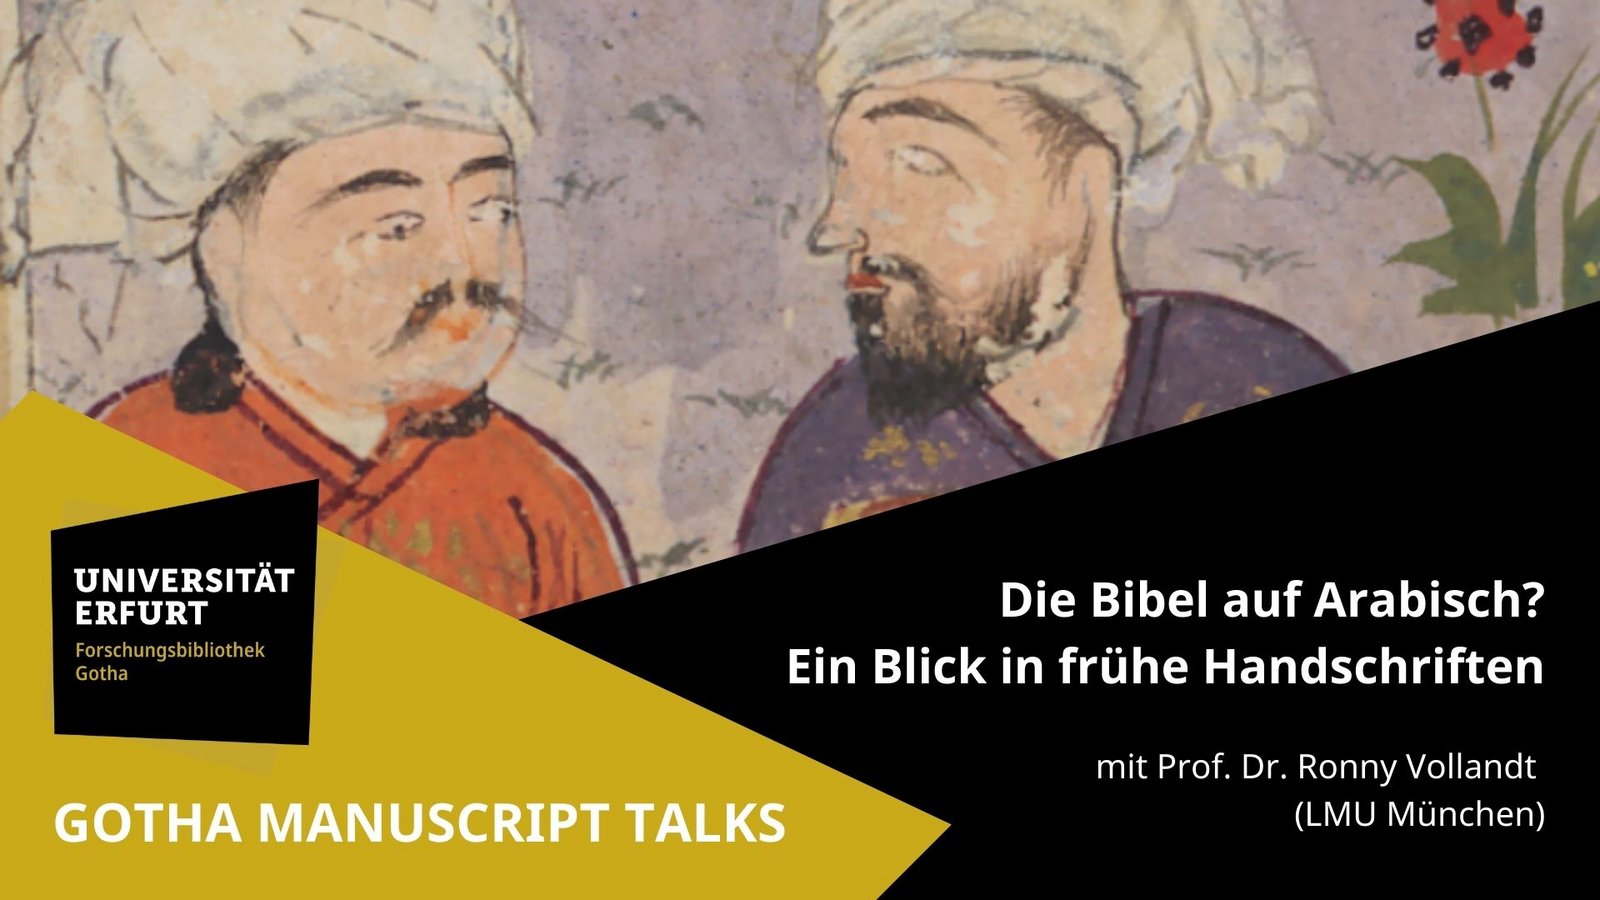 Vorschaubild zu Gotha Manuscript Talks 02: Die Bibel auf Arabisch? Ein Blick in frühe Handschriften mit Prof. Dr. Ronny Vollandt